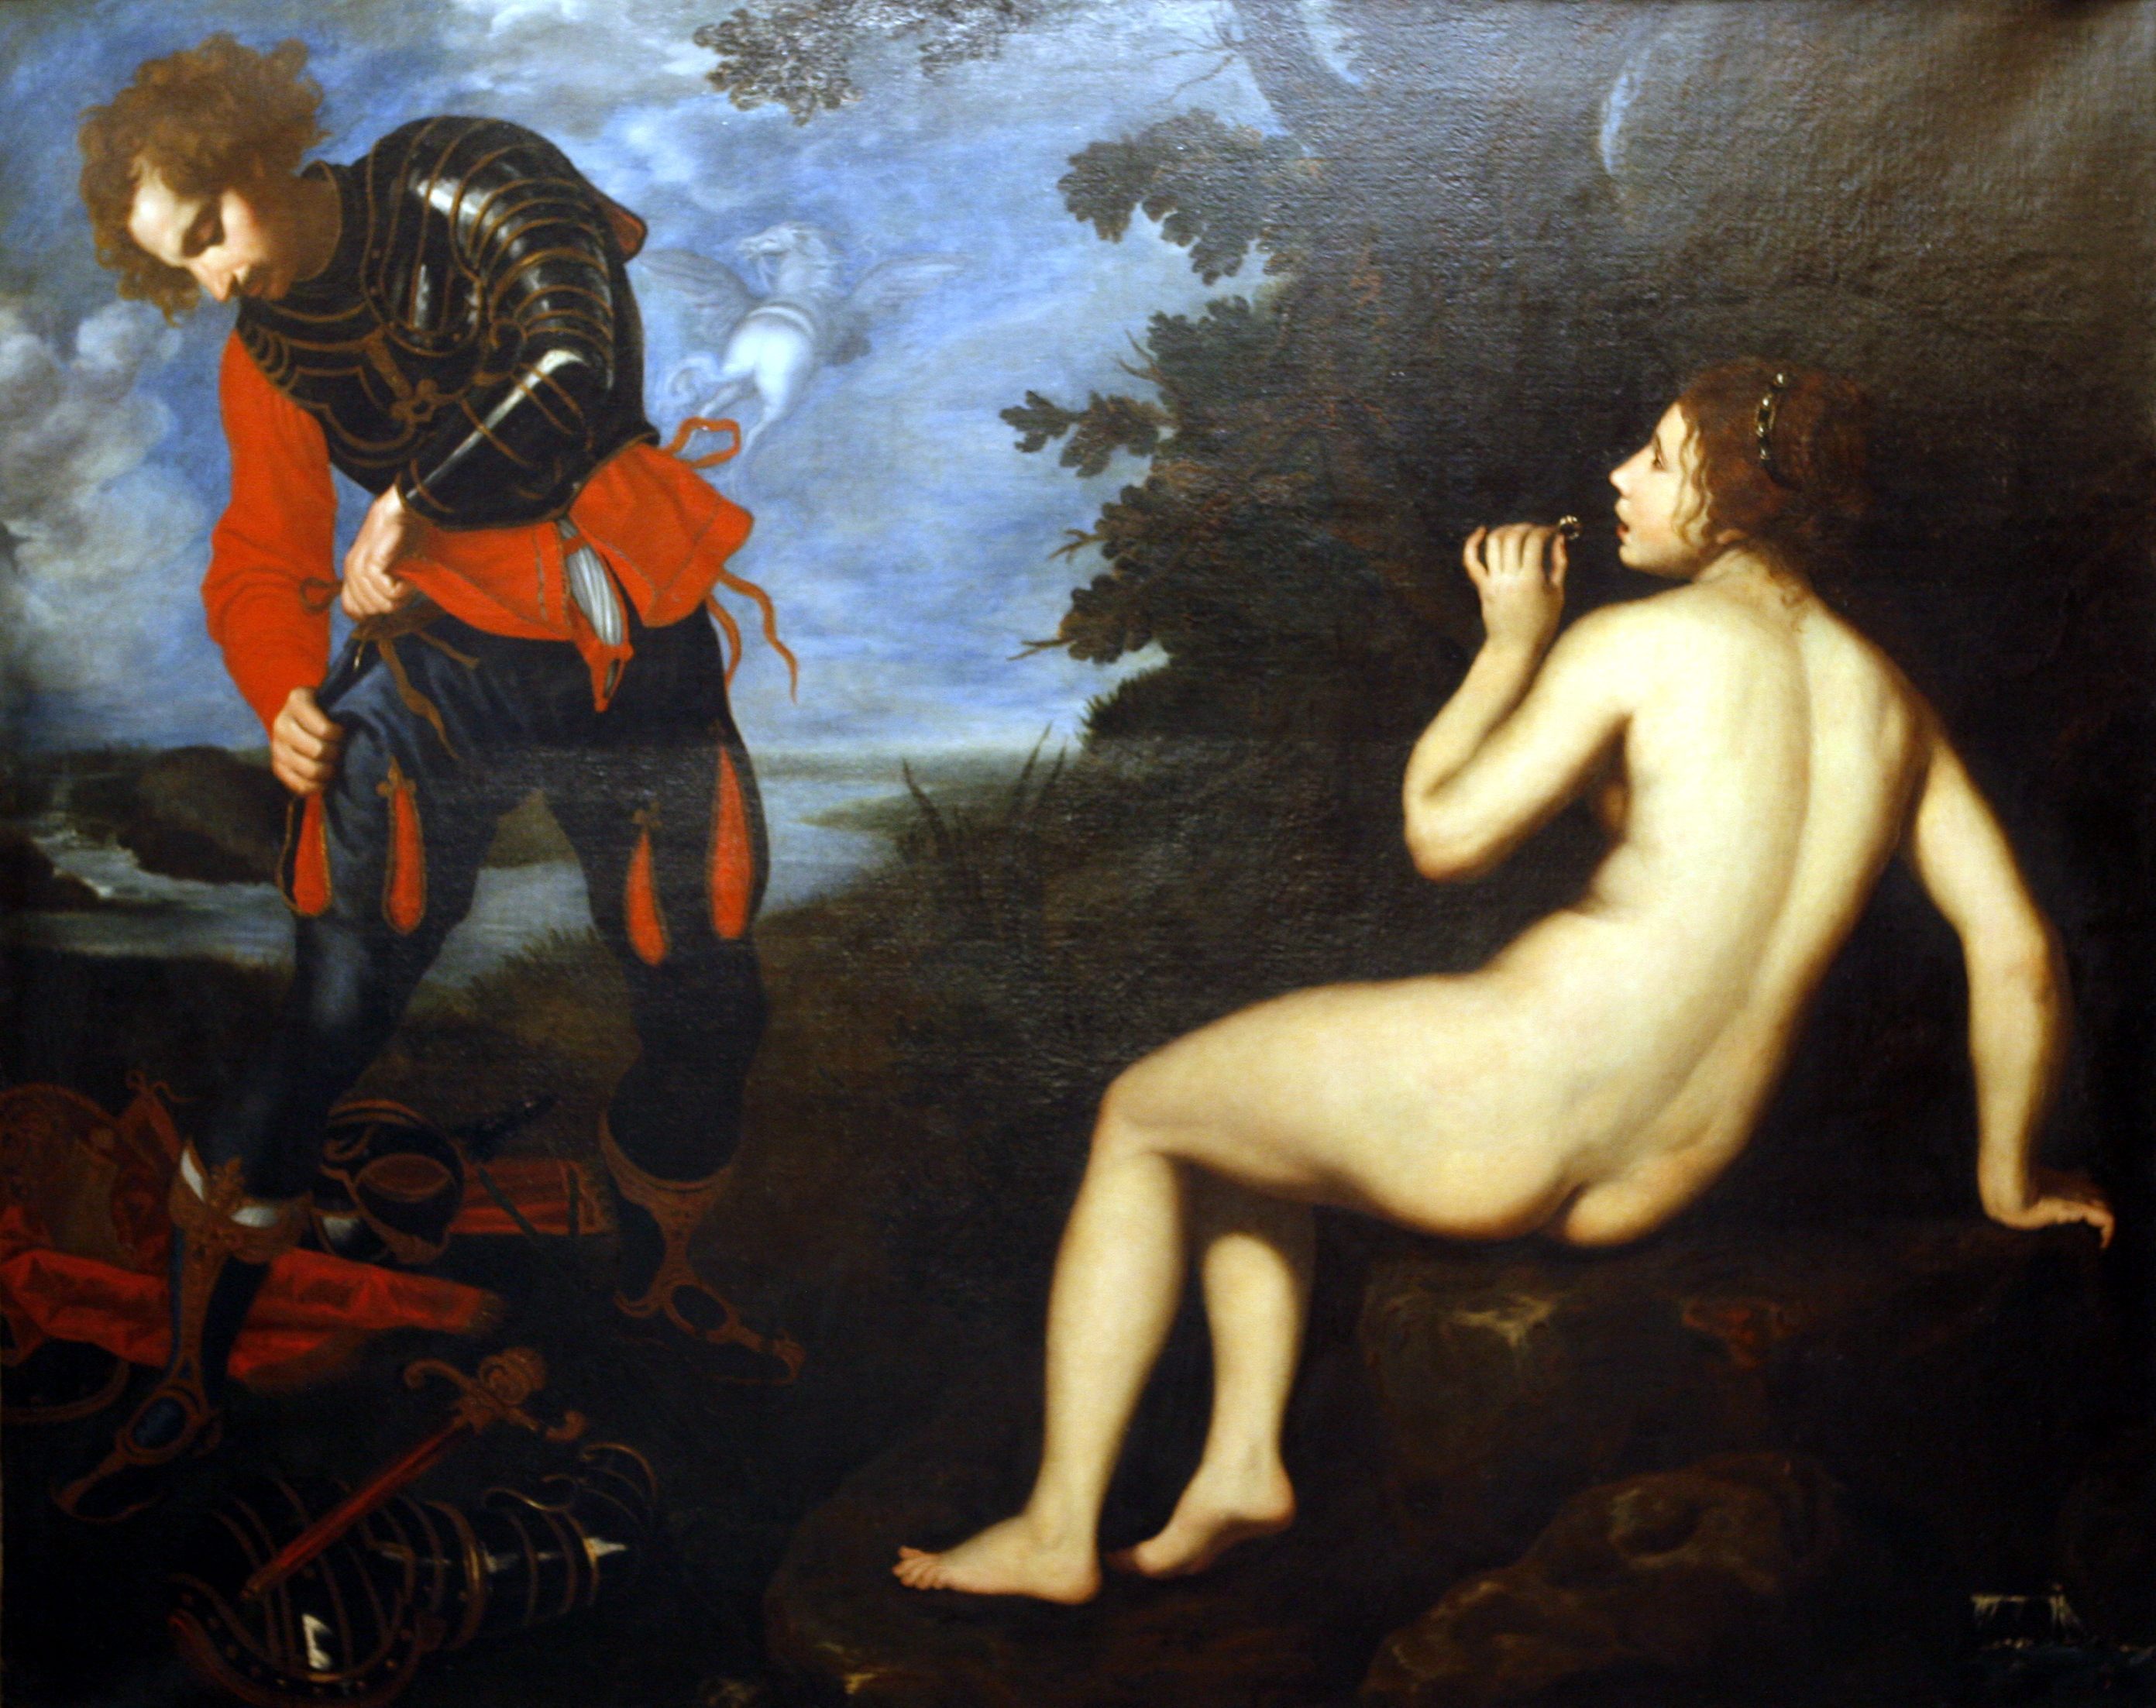 Ρουτζέρος και Αγγελική  by Τζιοβάνι Μπιλιβέρτι - περ. 1630 